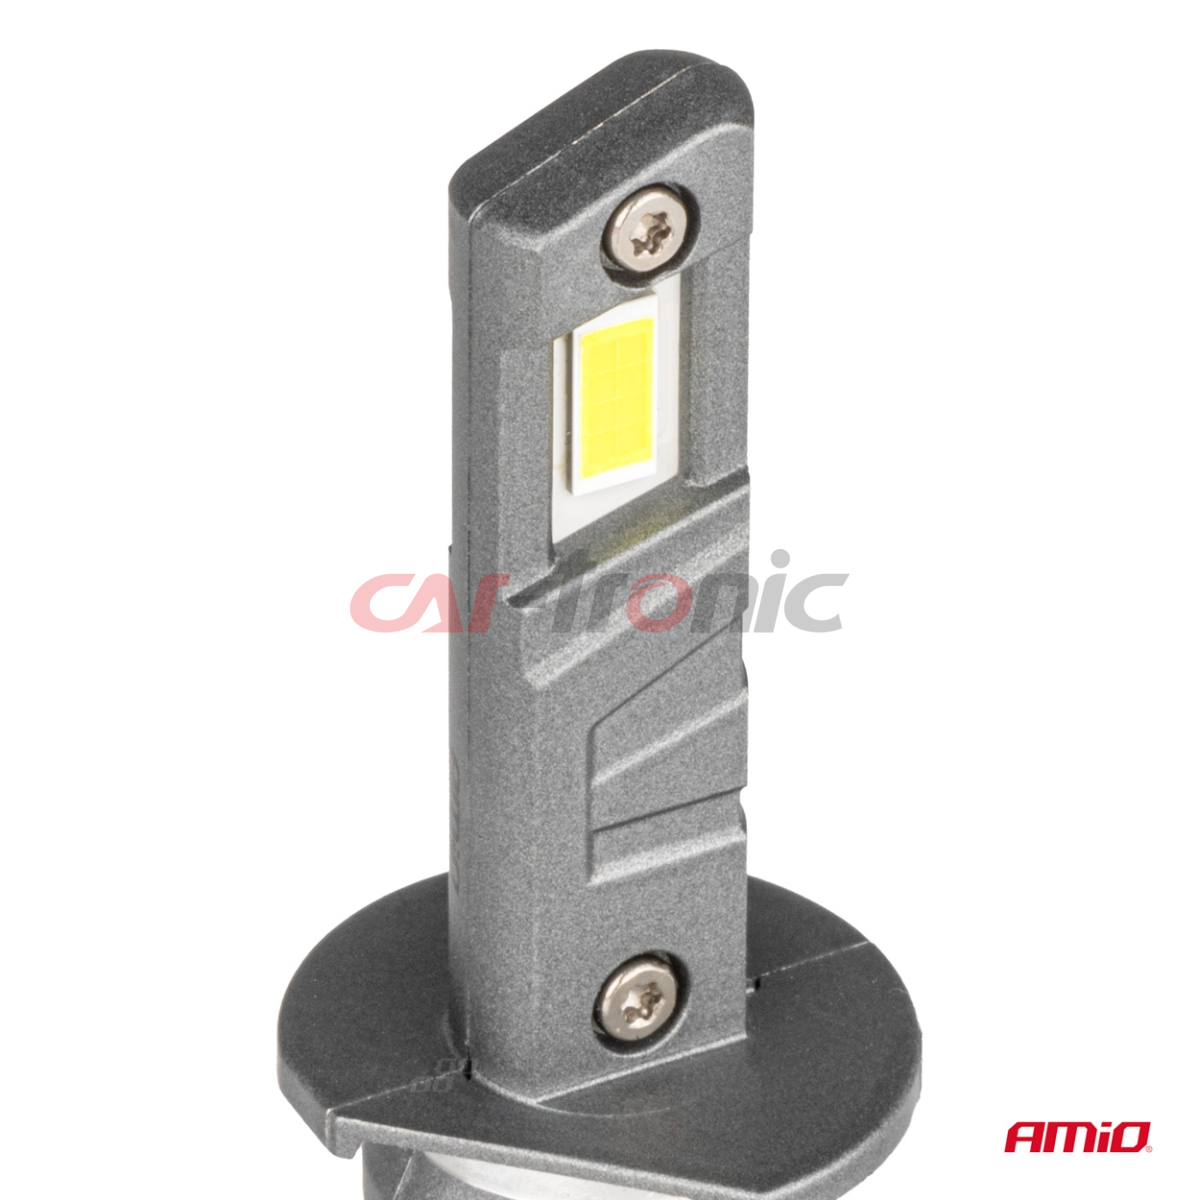 Żarówki samochodowe LED seria X5 Winger H1 6000K Canbus AMIO-03943